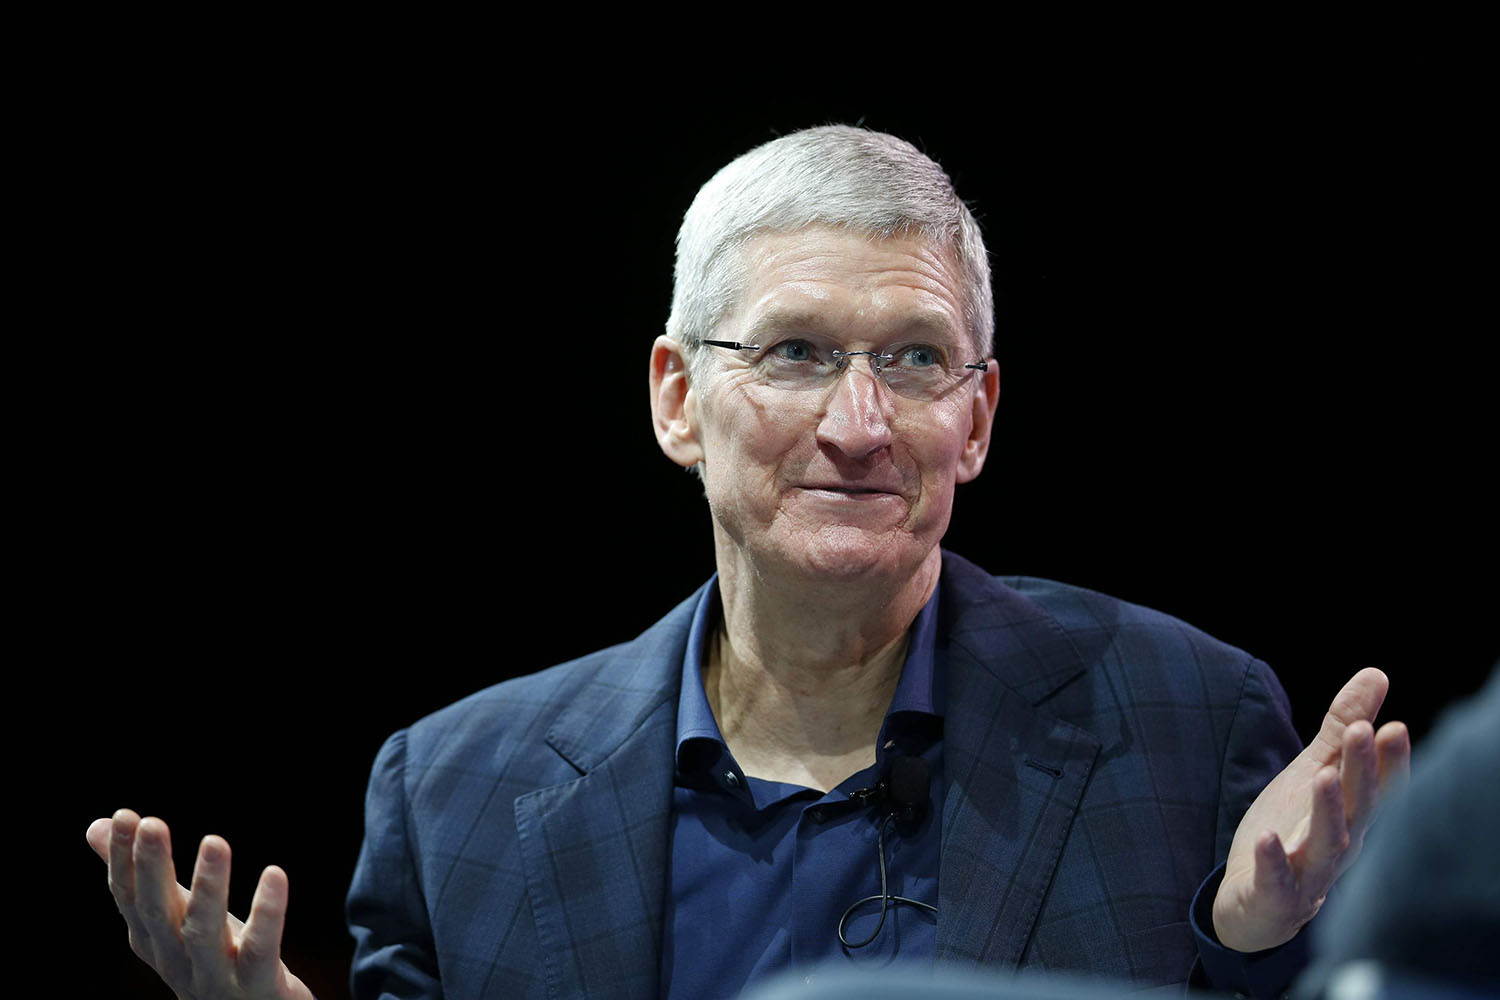 El consejero delegado de Apple, Tim Cook, sale del armario